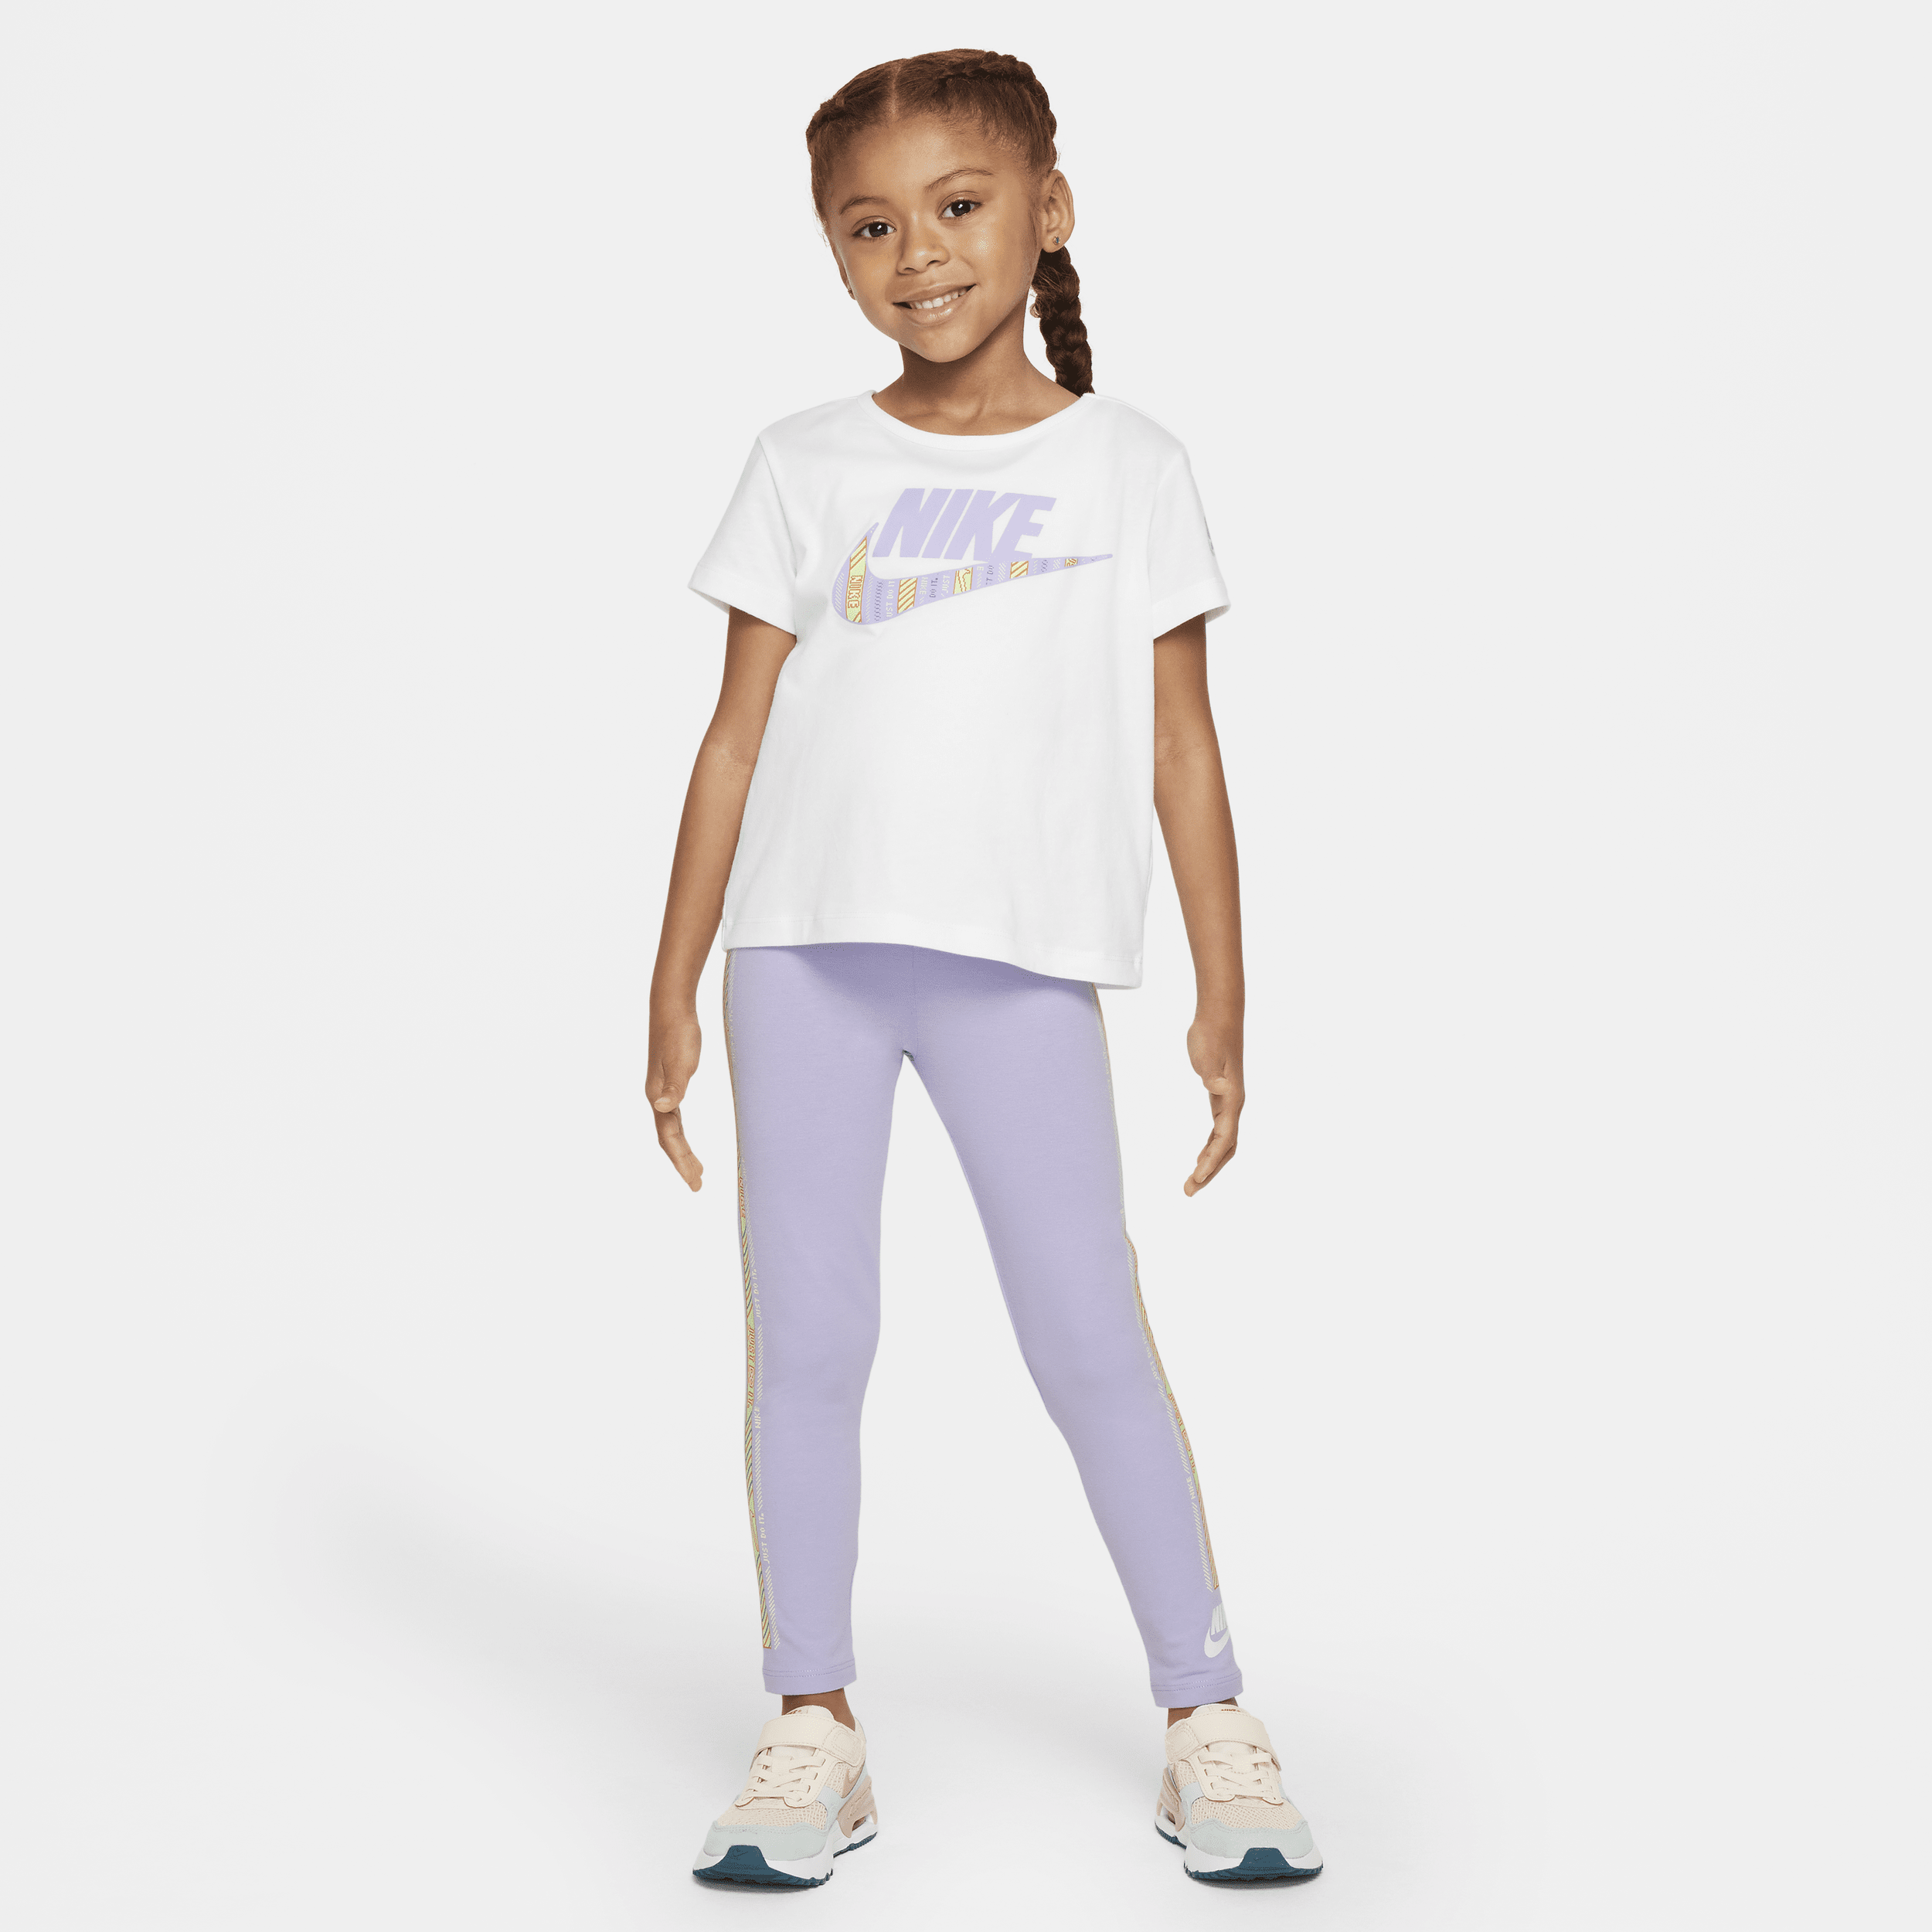 Completo con leggings Nike Happy Camper – Bambino/a - Viola